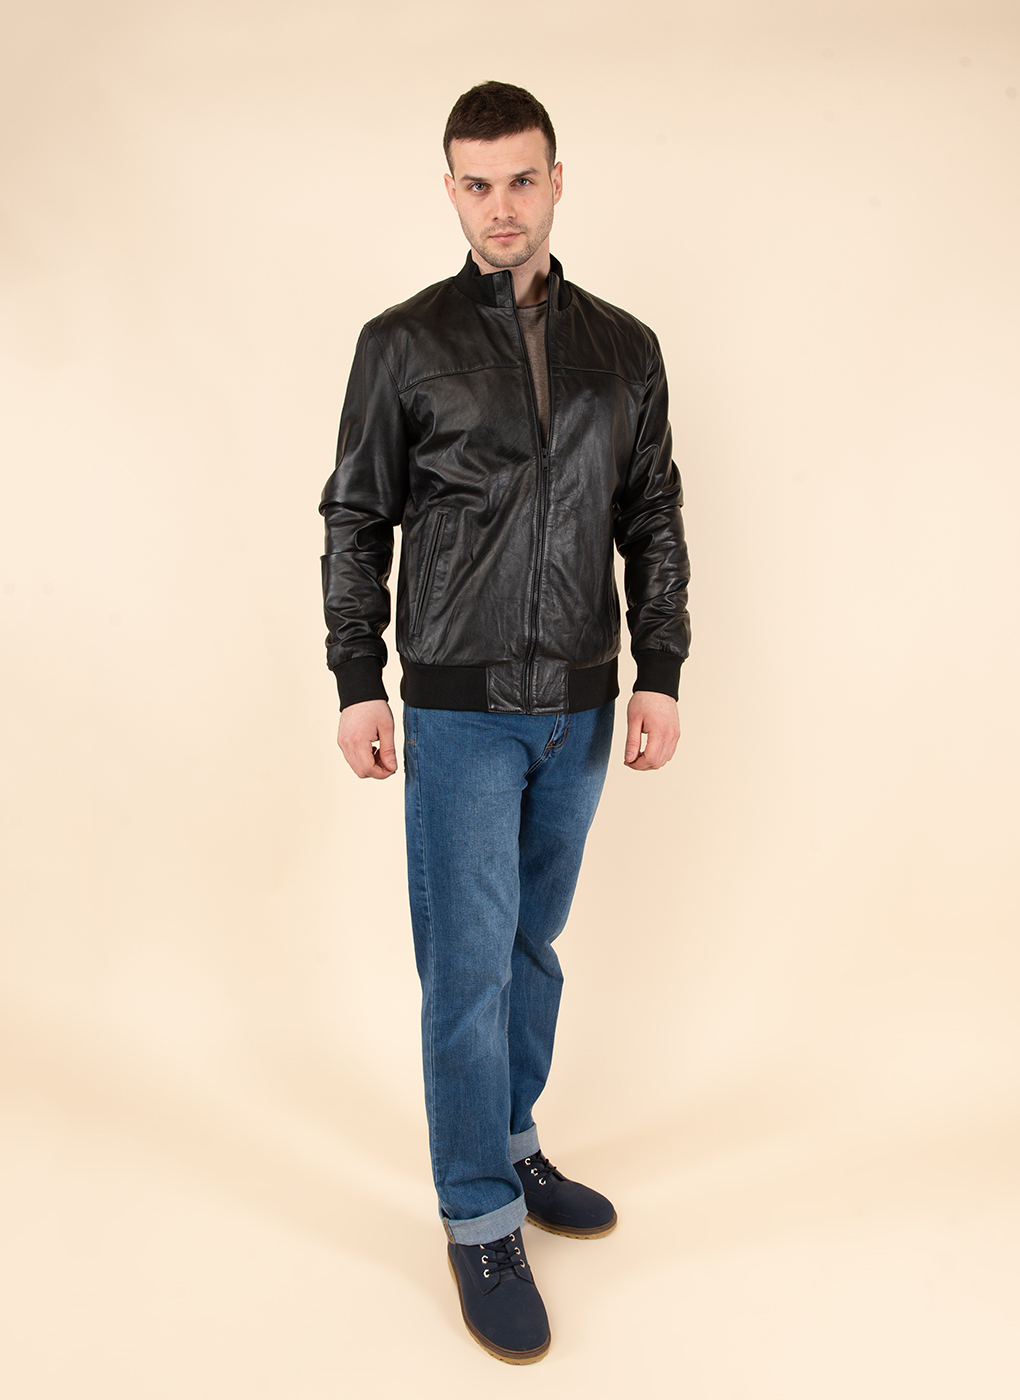 Кожаная куртка мужская Каляев 45226 черная 62 RU